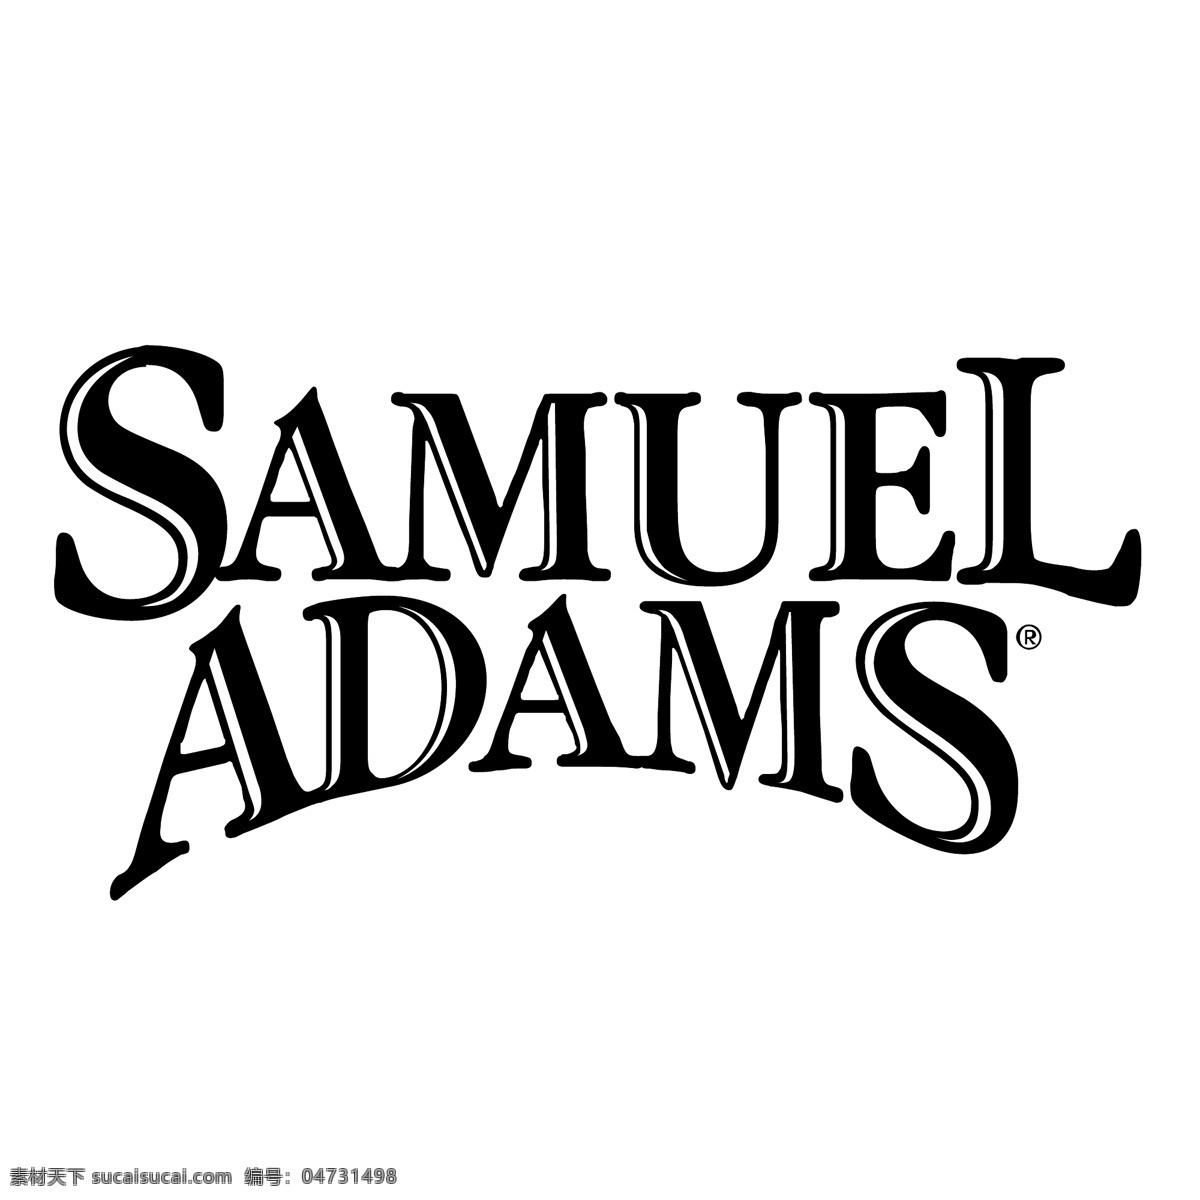 塞缪尔亚当斯 高尔夫 矢量标志 塞缪尔 亚当斯 亚当斯矢量 亚当斯表示 矢量 表示 亚当斯标志 标志亚当斯 标志 塞缪尔标志 塞缪尔塞缪尔 亚当斯h samuel 向量 矢量图 建筑家居